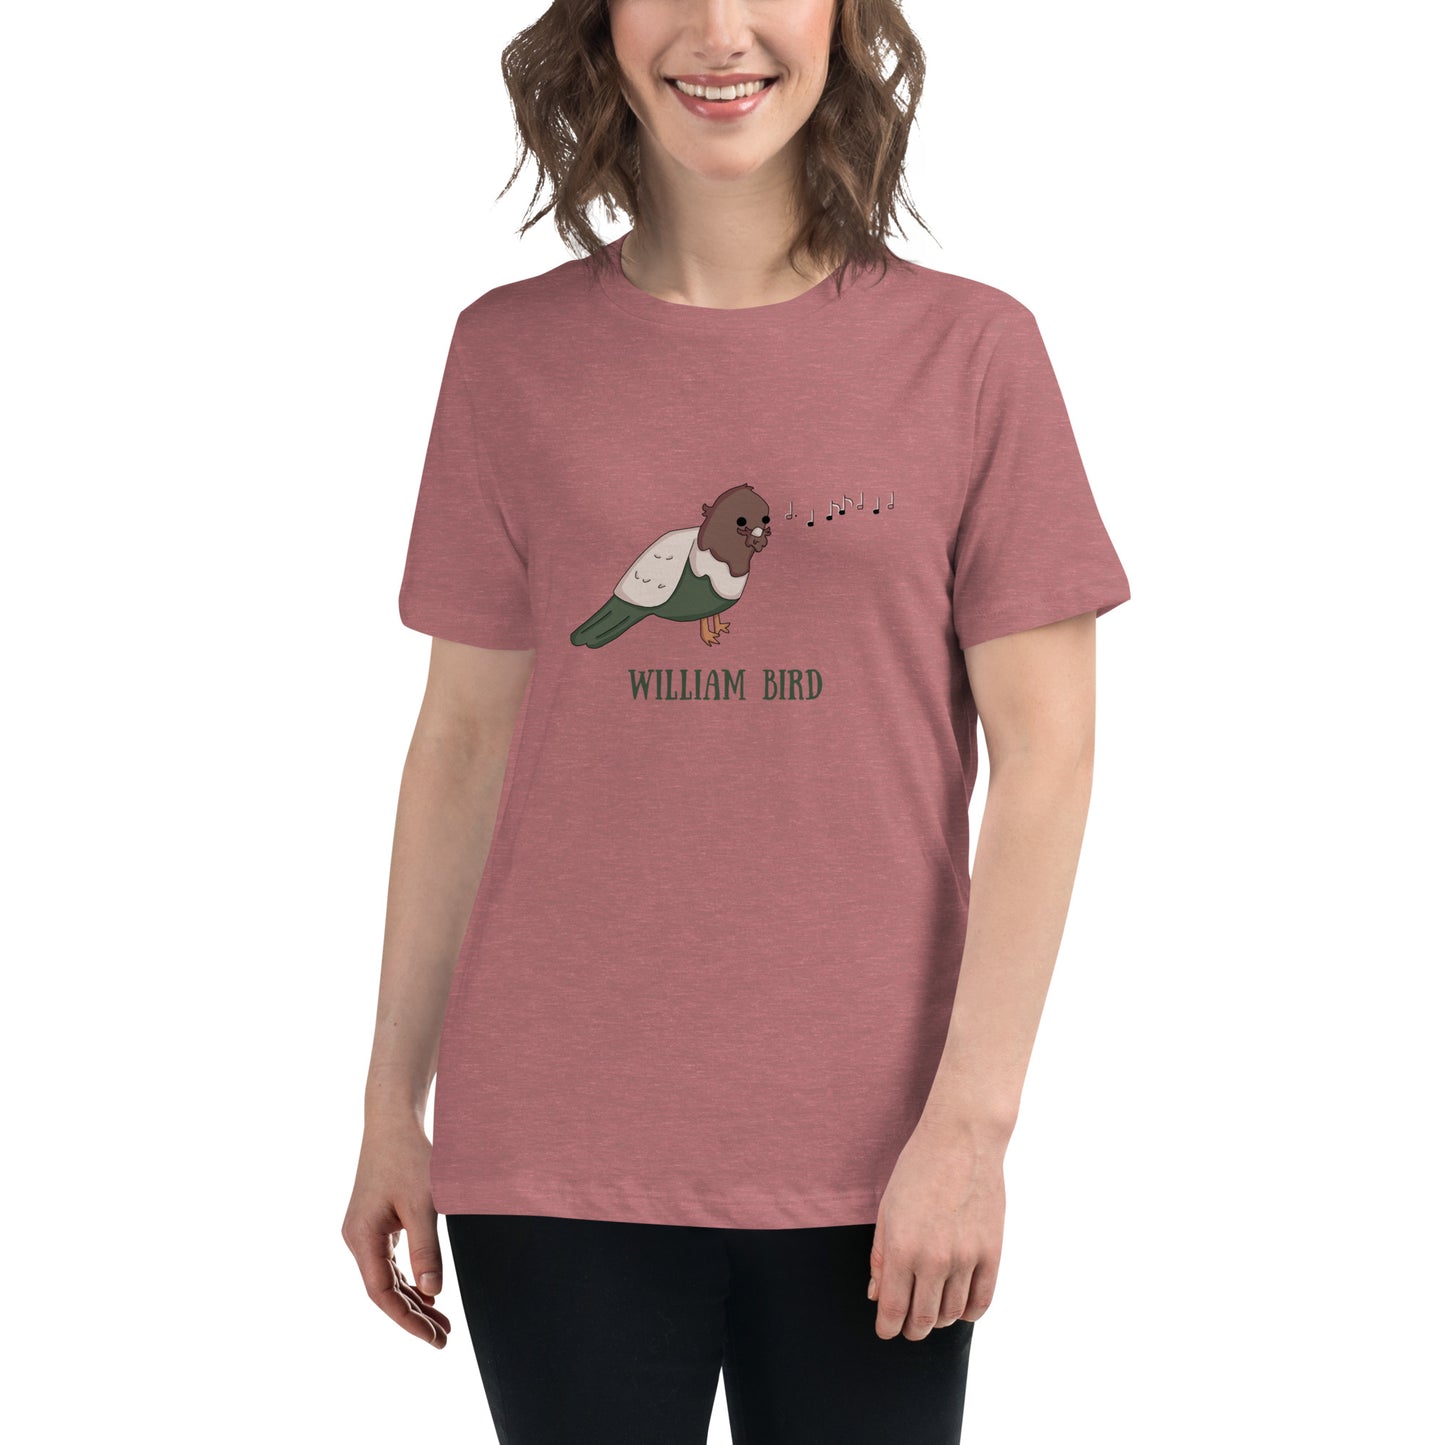 William Bird - Women's Relaxed T-Shirt